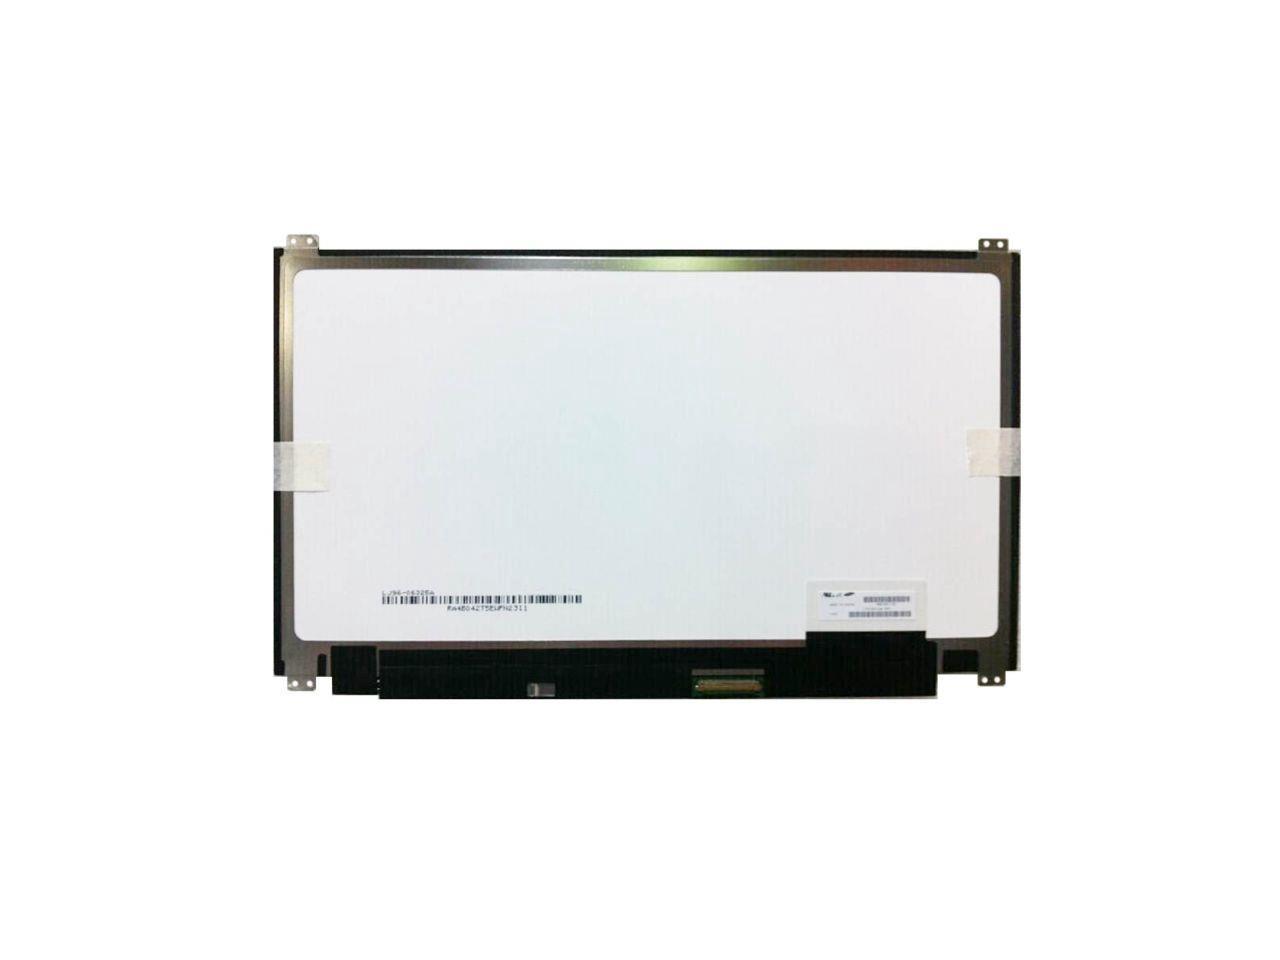 Laptop LCD Top Cover for ASUS G70 G70S G70Sg G70v Black 